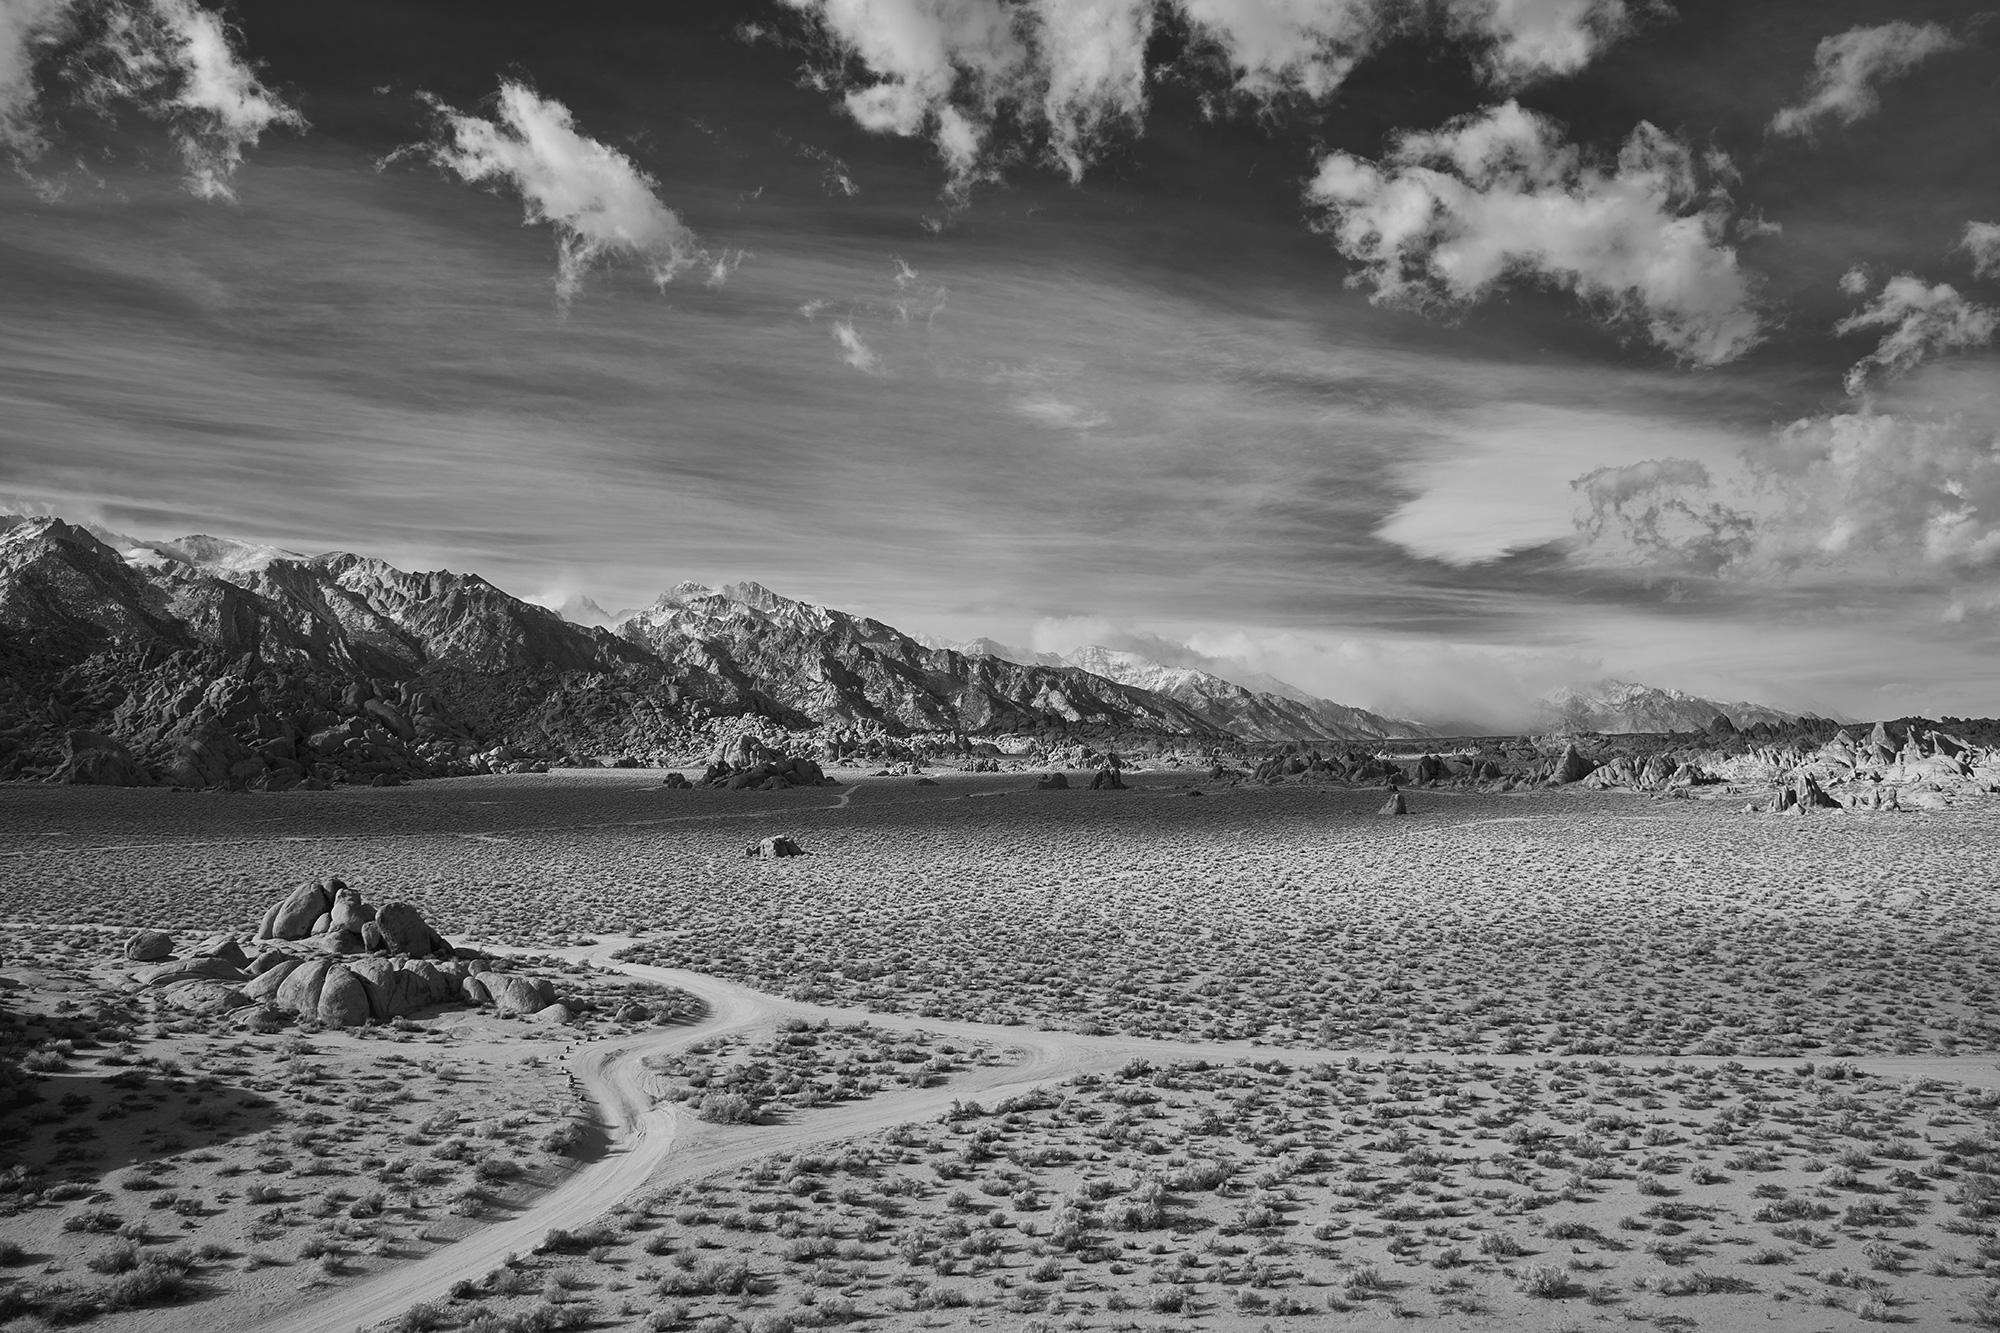 Landscape Photograph Frank Schott - Crossing du désert - photographie à grande échelle d'un paysage désertique spectaculaire